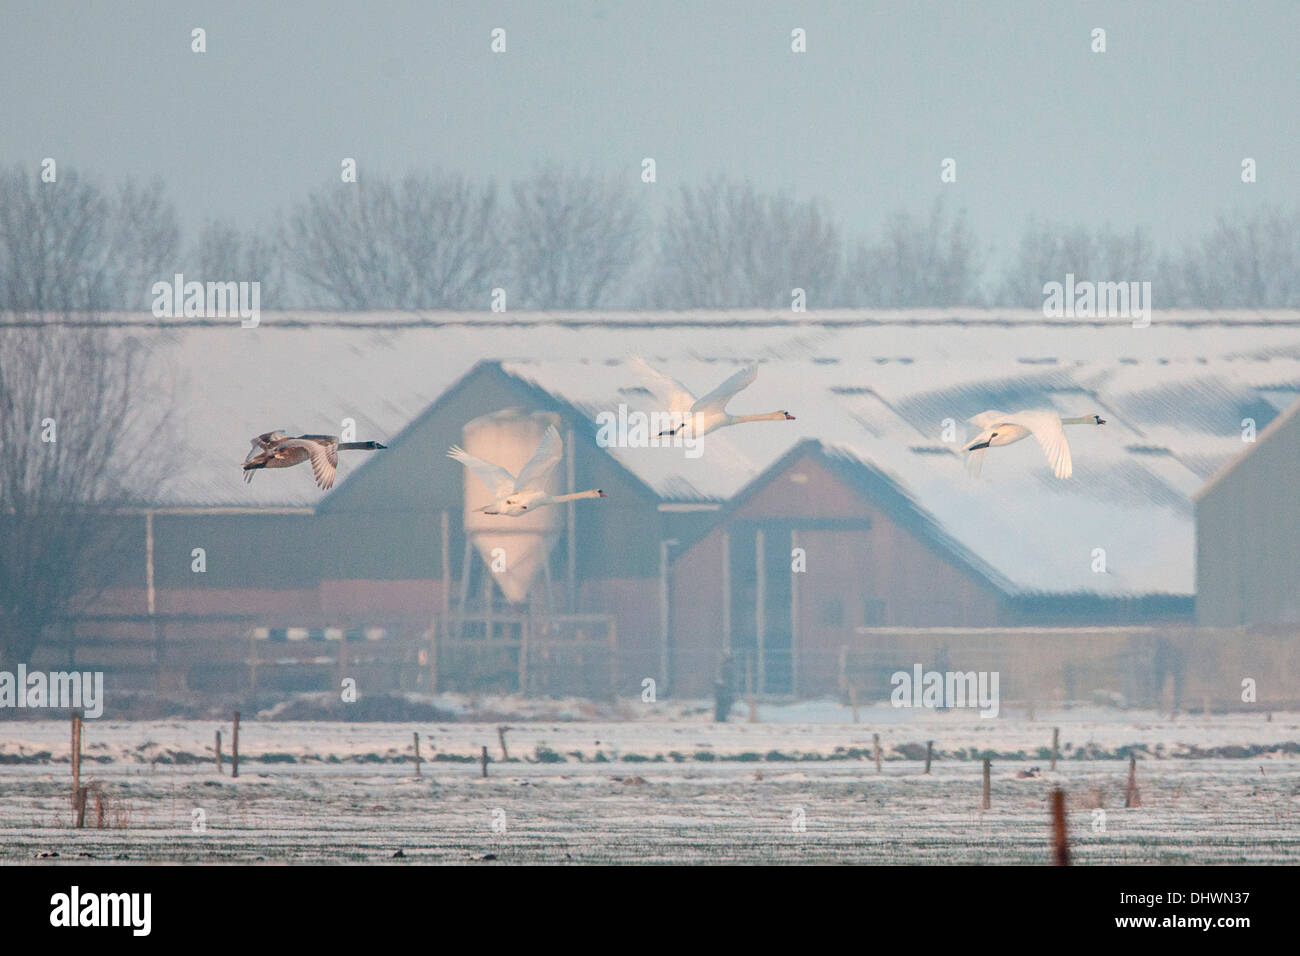 Paesi Bassi, Eemnes Eem polder. Eempolder, luogo di riposo per gli uccelli. L'inverno. Cigni battenti nella parte anteriore del maso Foto Stock